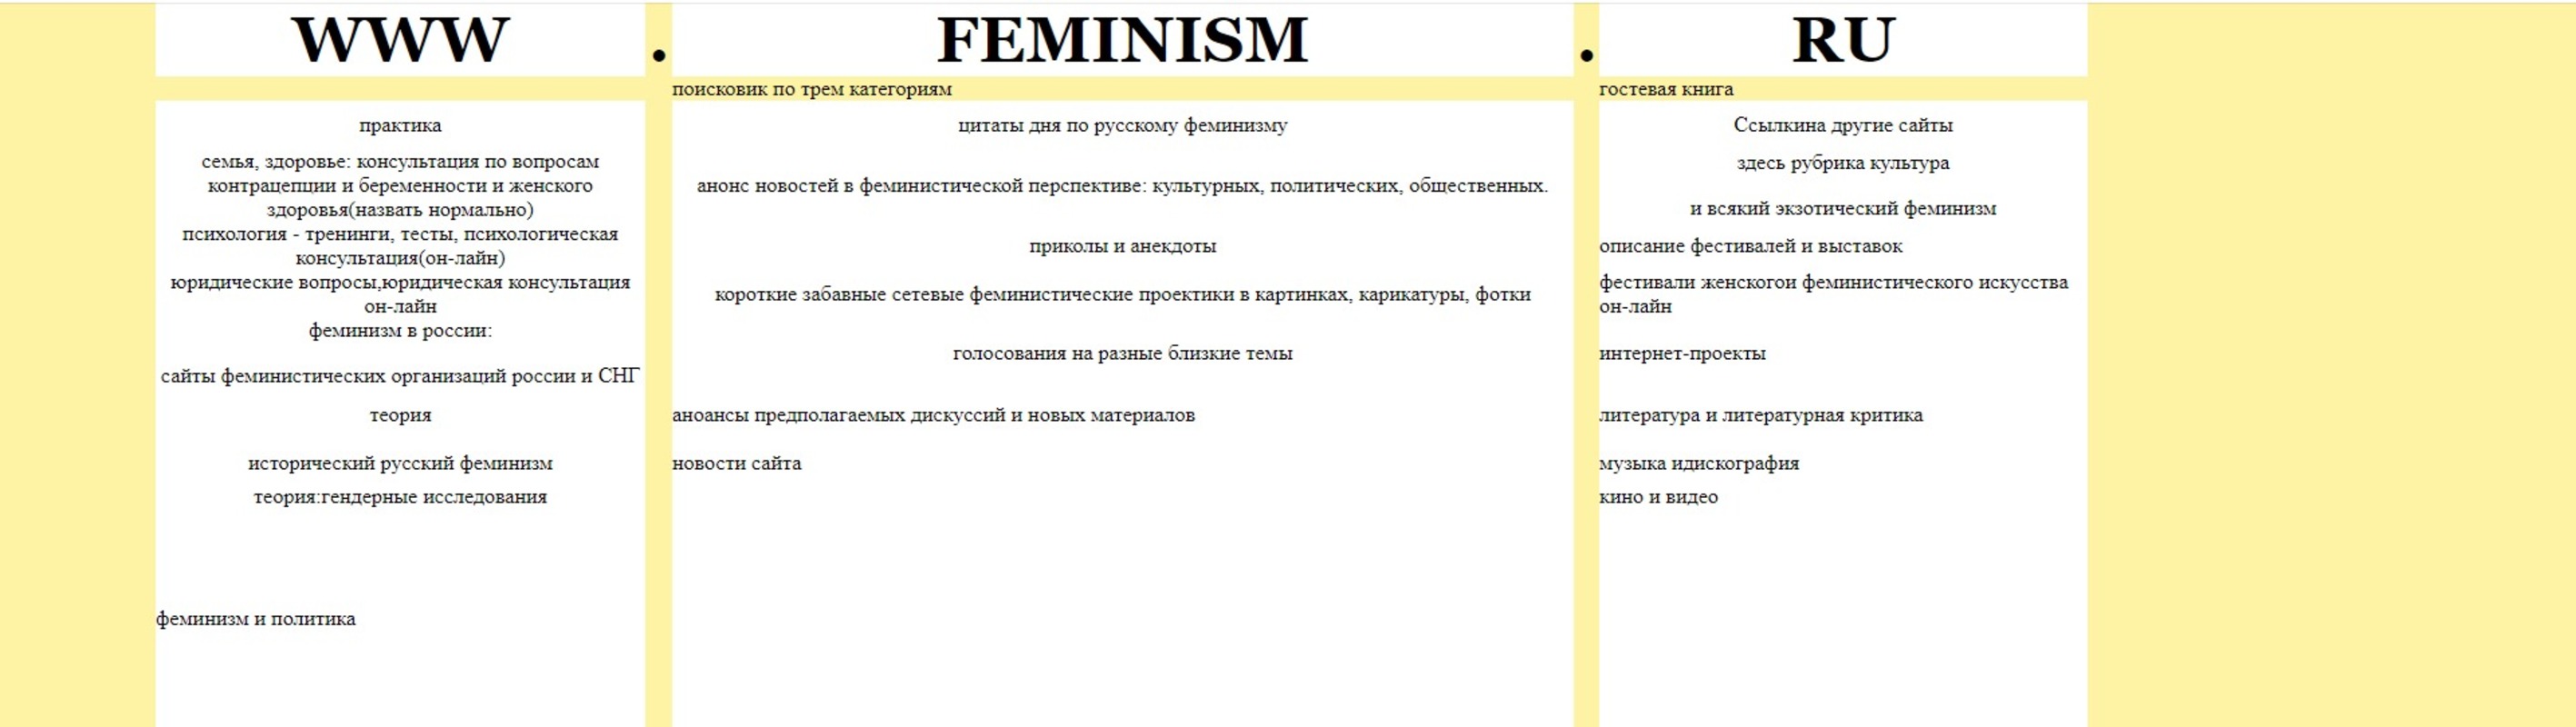 Проект сайта Feminism.ru